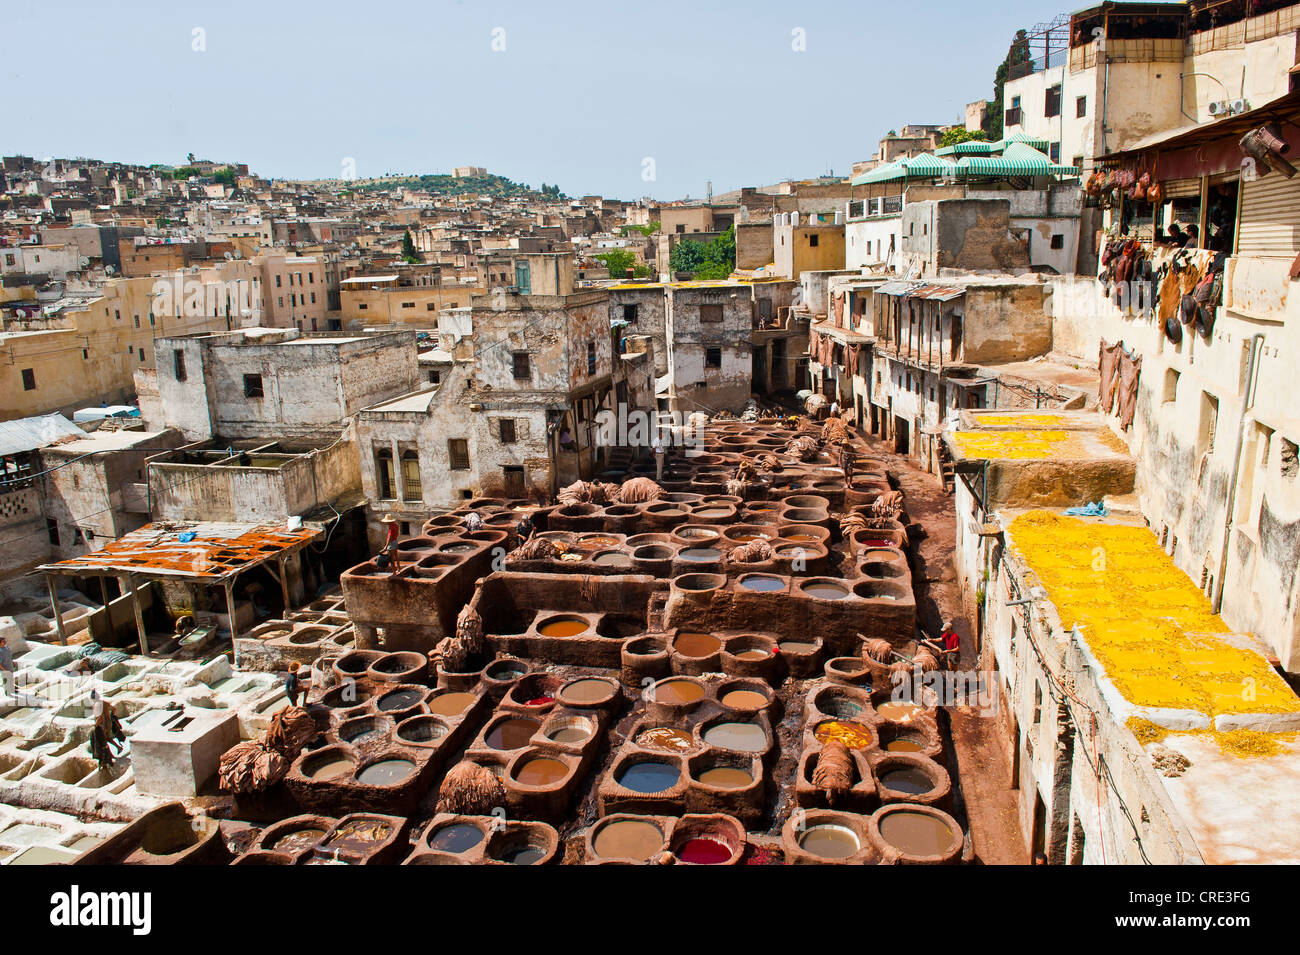 Les tanneries traditionnelles avec le bronzage et cuves de mourir, la vieille ville ou médina de Fès ou Fez, Site du patrimoine mondial de l'UNESCO, le Maroc, l'Afrique Banque D'Images